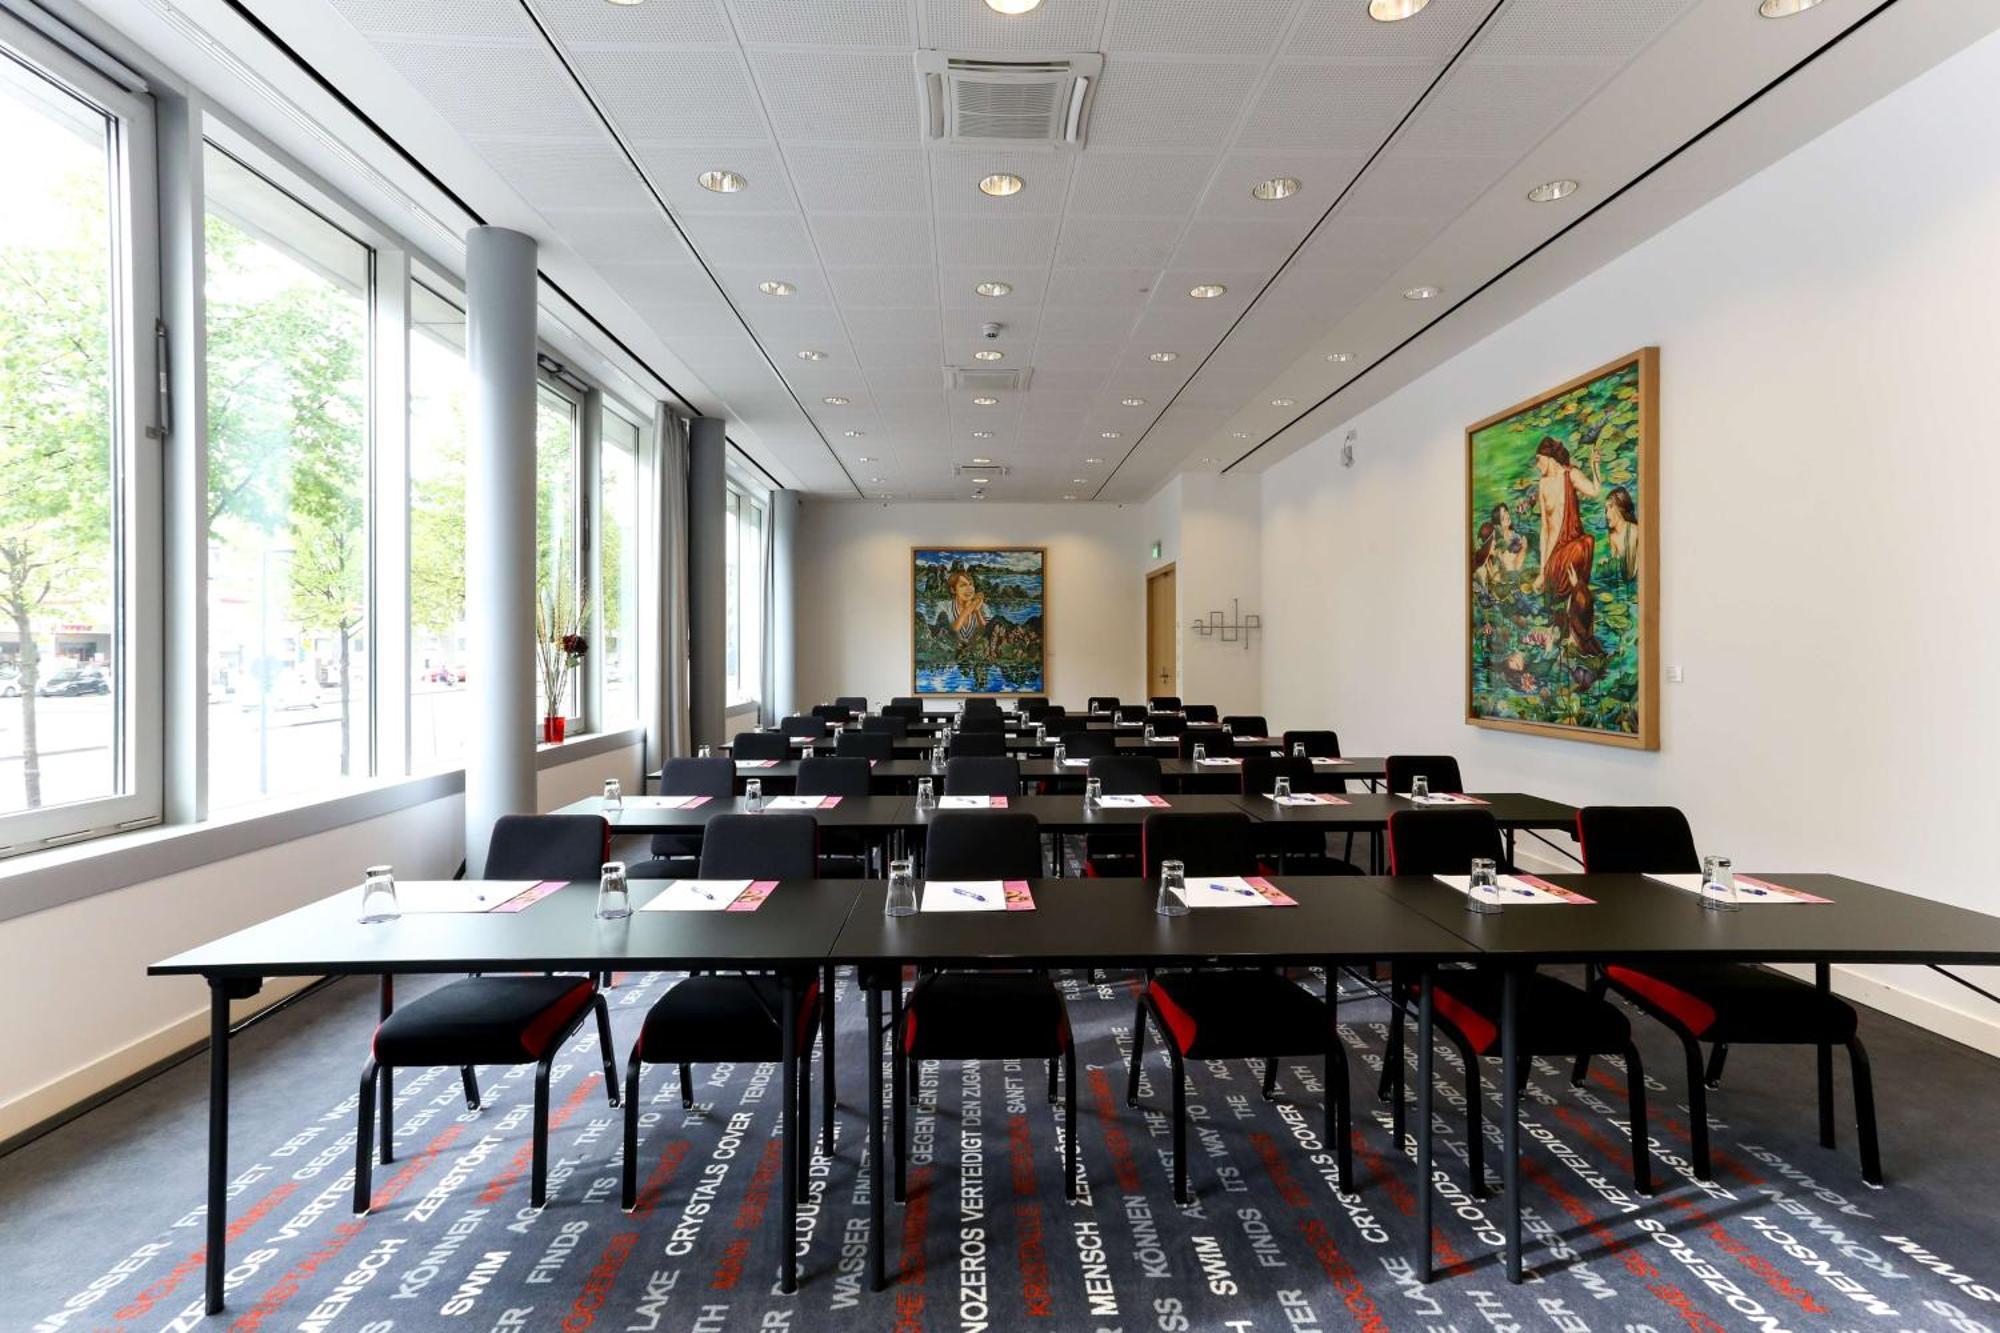 Art'Otel Cologne, Powered By Radisson Hotels Kültér fotó